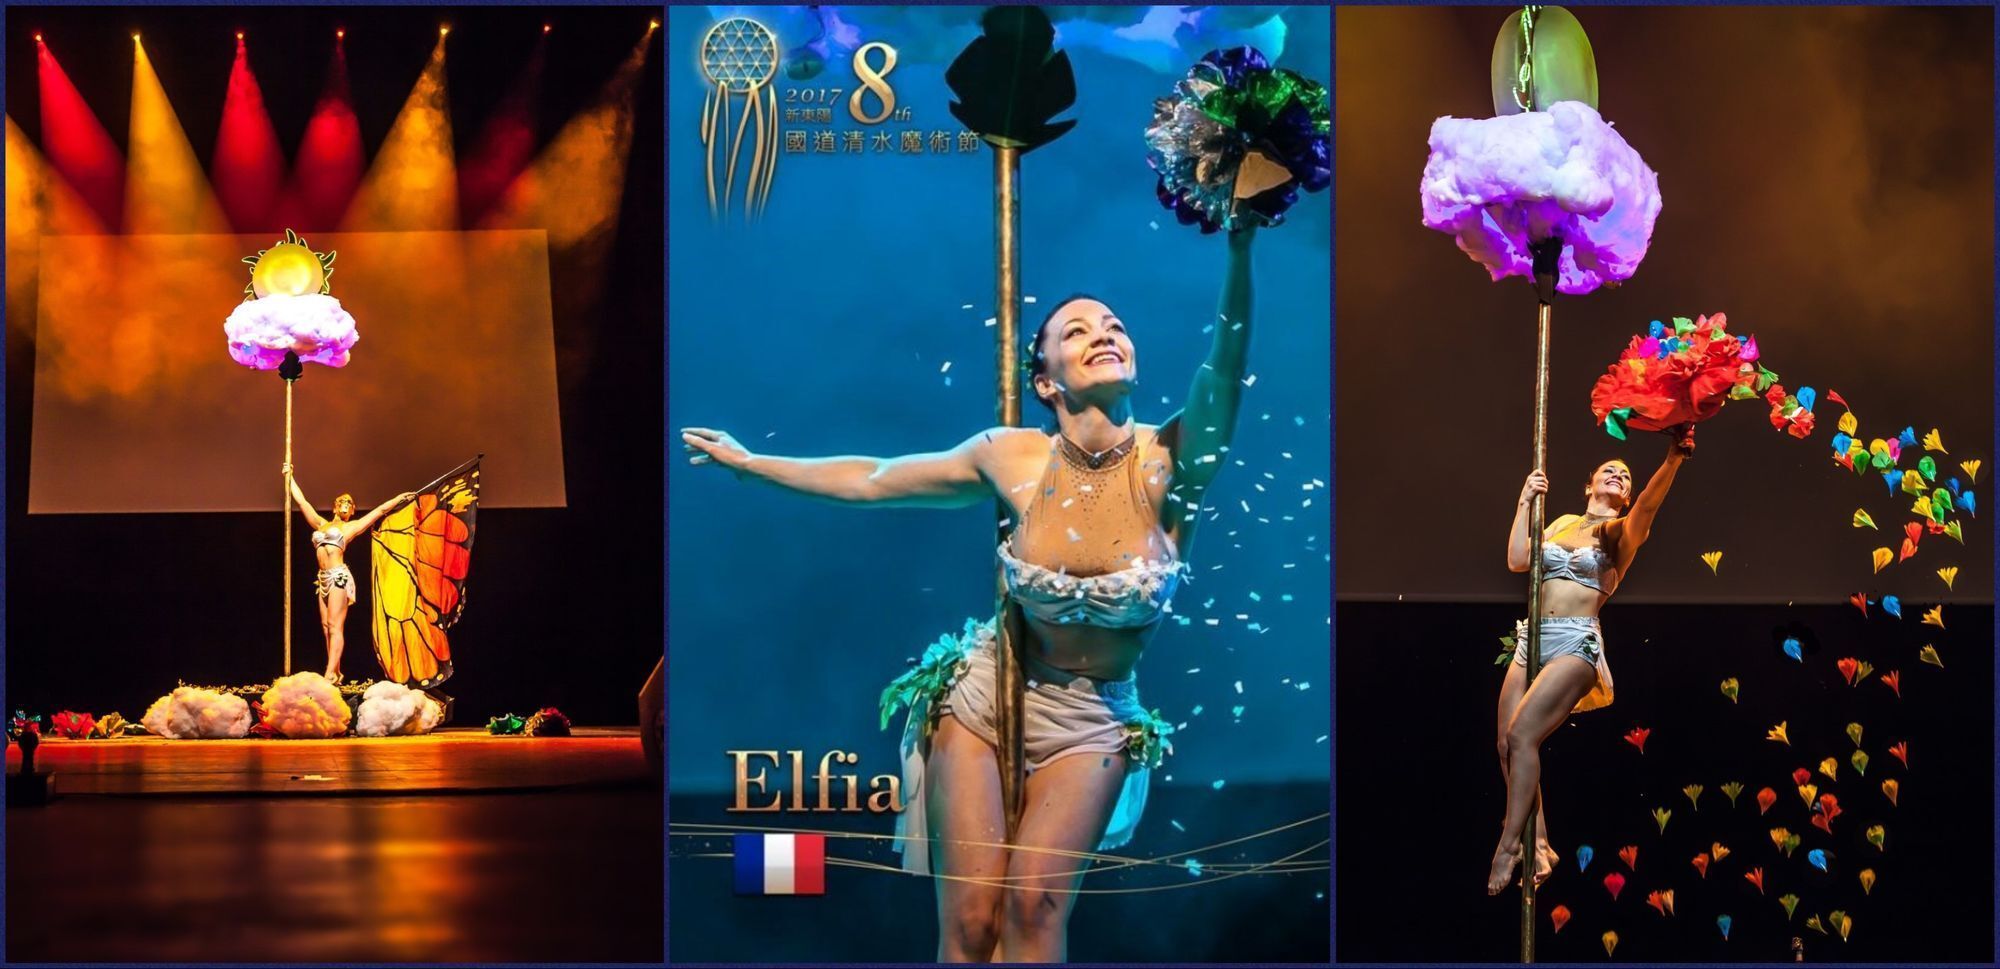 Elfia, Magicienne professionnelle depuis 2009